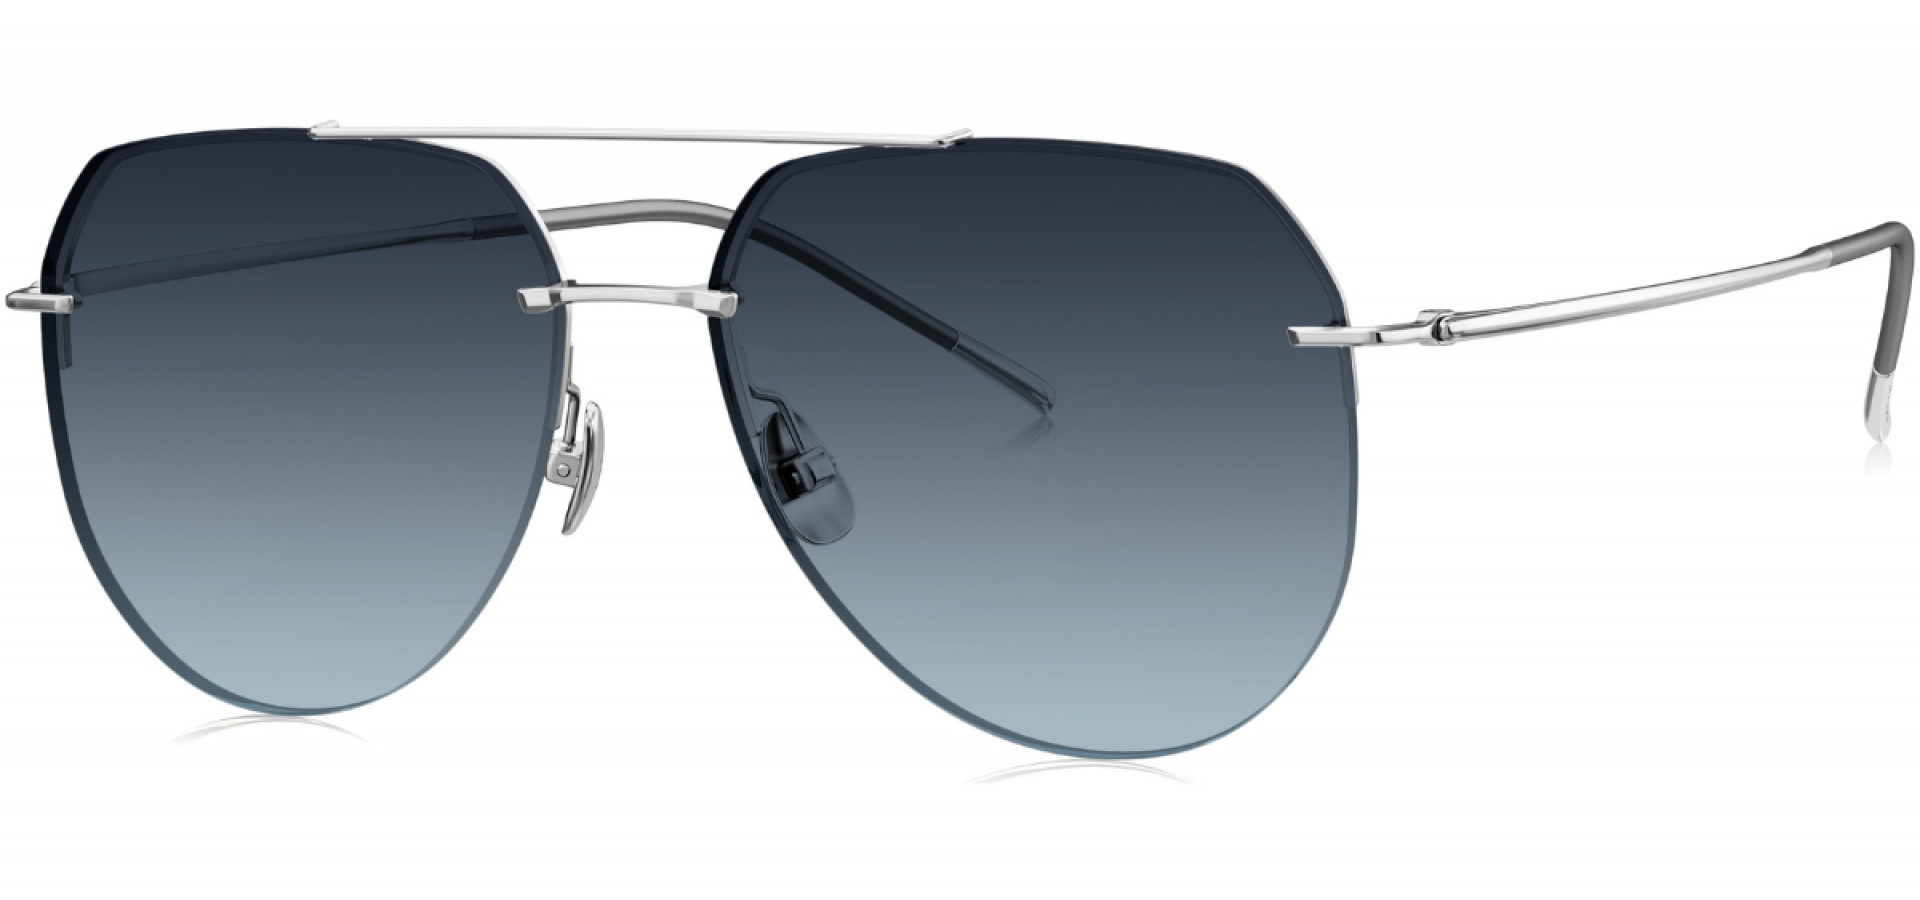 Sunčane naočale Bolon BV1022 59 A97: Boja: Silver, Veličina: 59-15-148, Spol: muške, Materijal: titanij